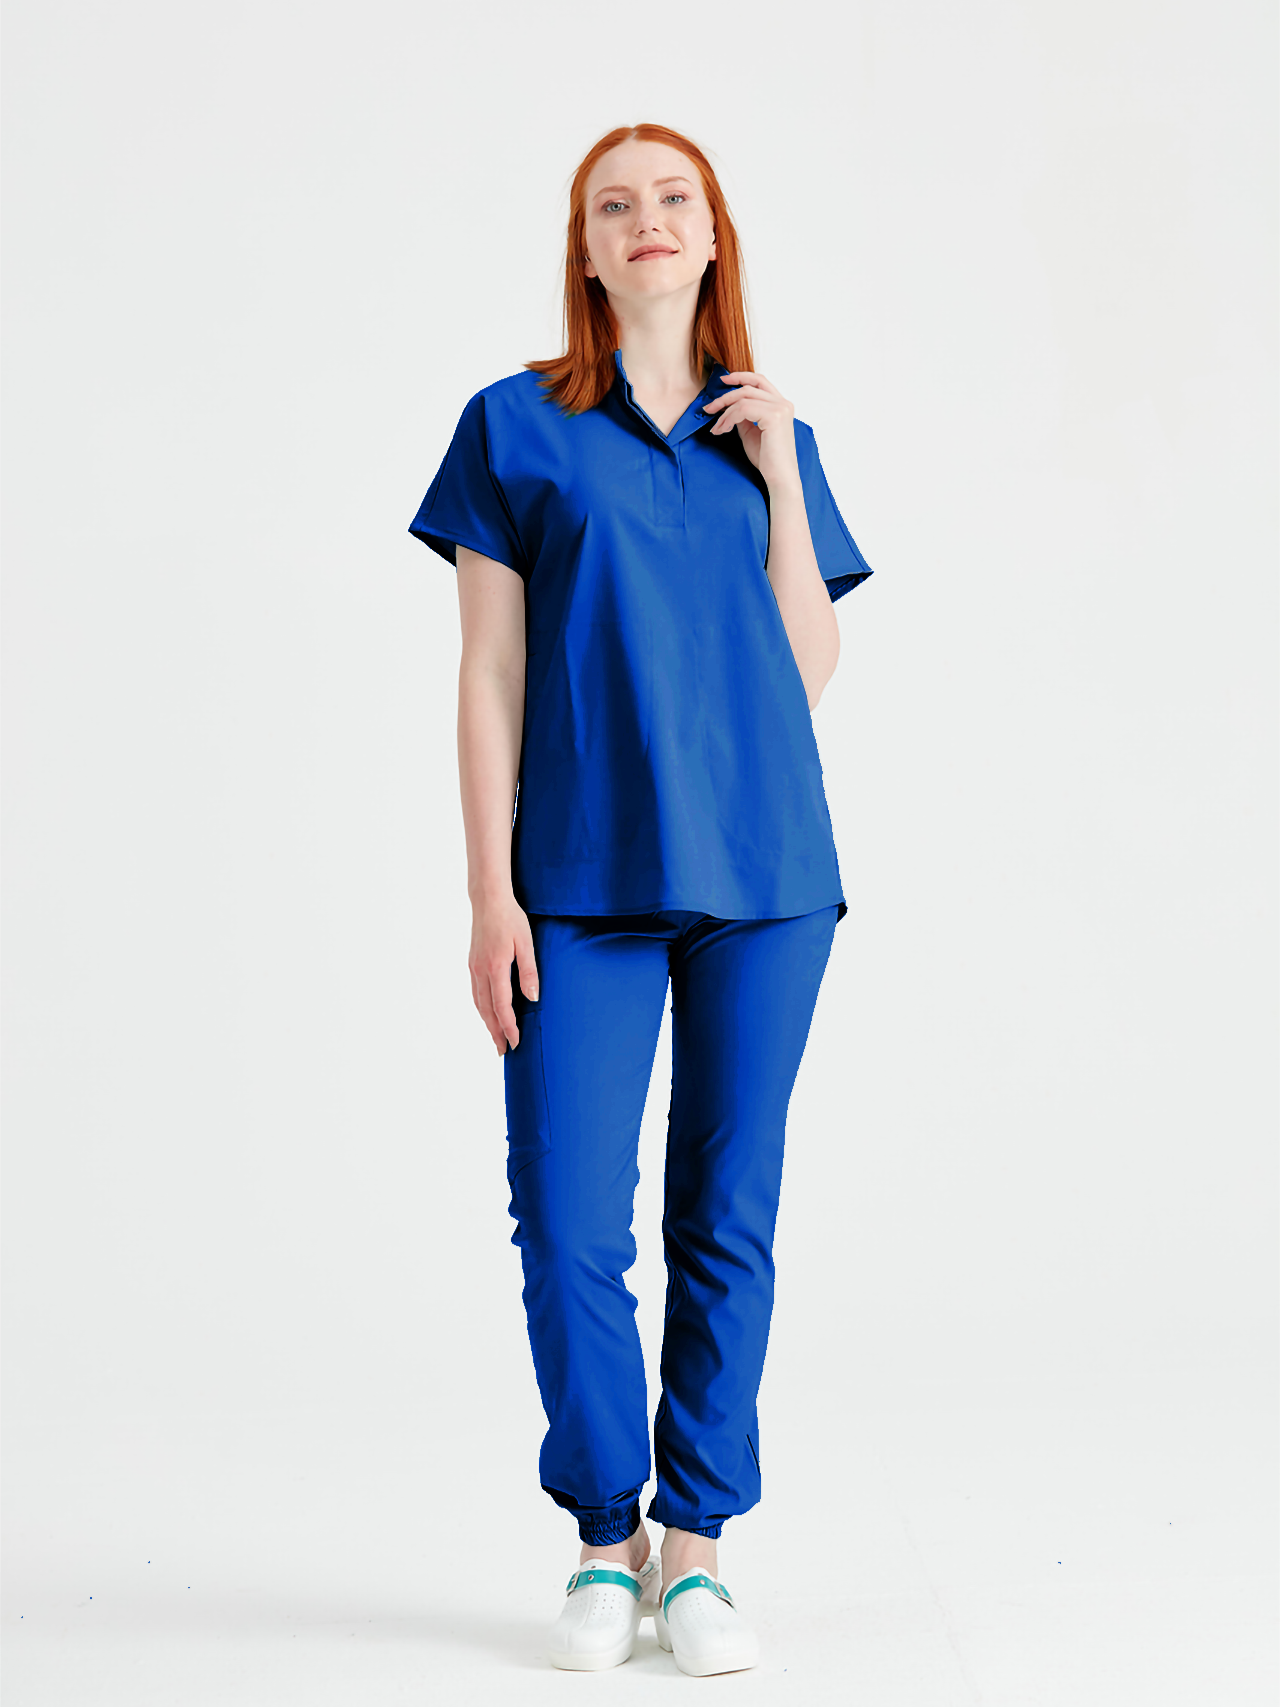 Asistenta medicala imbracata in costum medical, femei, albastru regal, vedere din profil